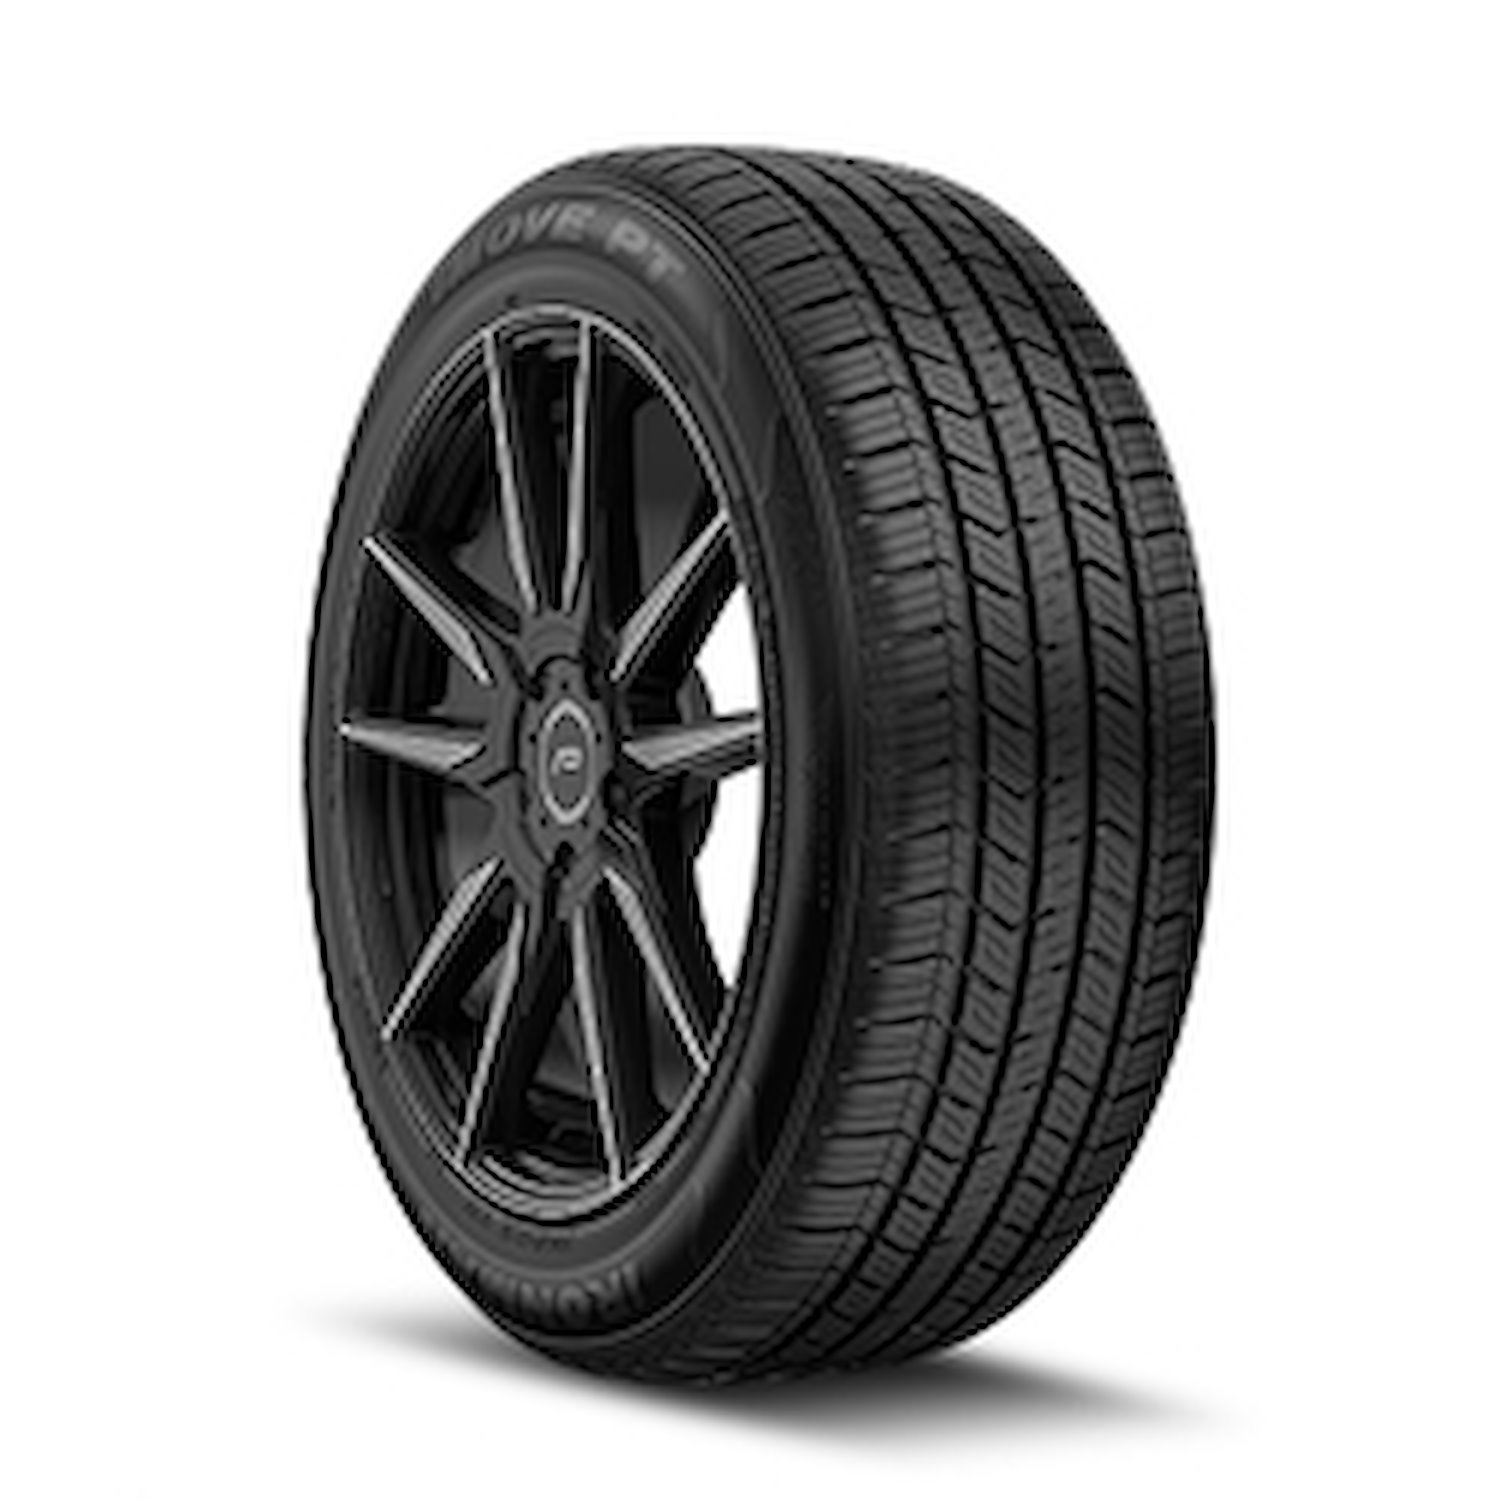 98464 iMOVE PT Tire, 235/65R16, 103H